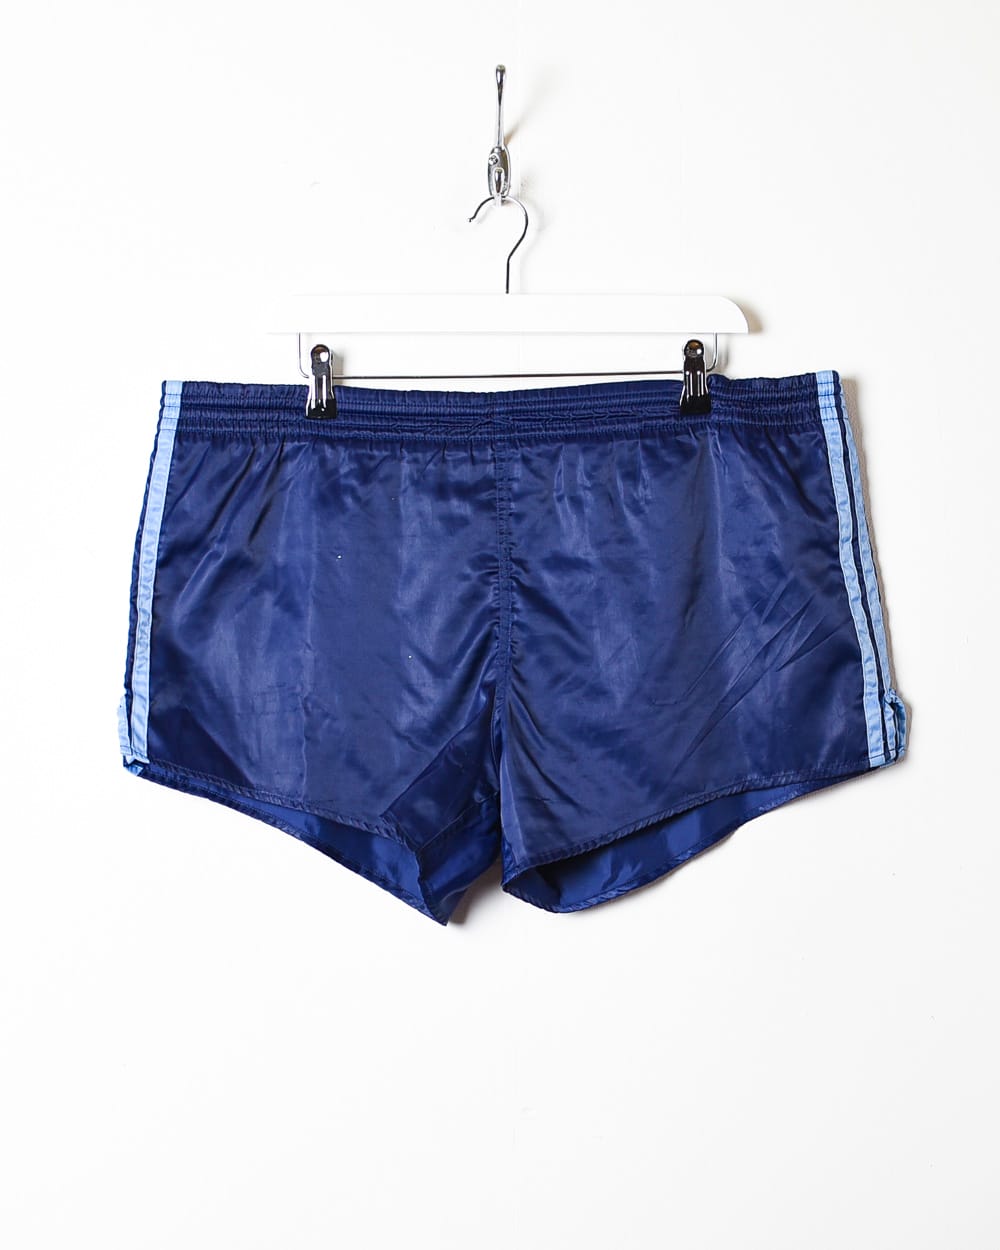 Navy Adidas Short Shorts - Large